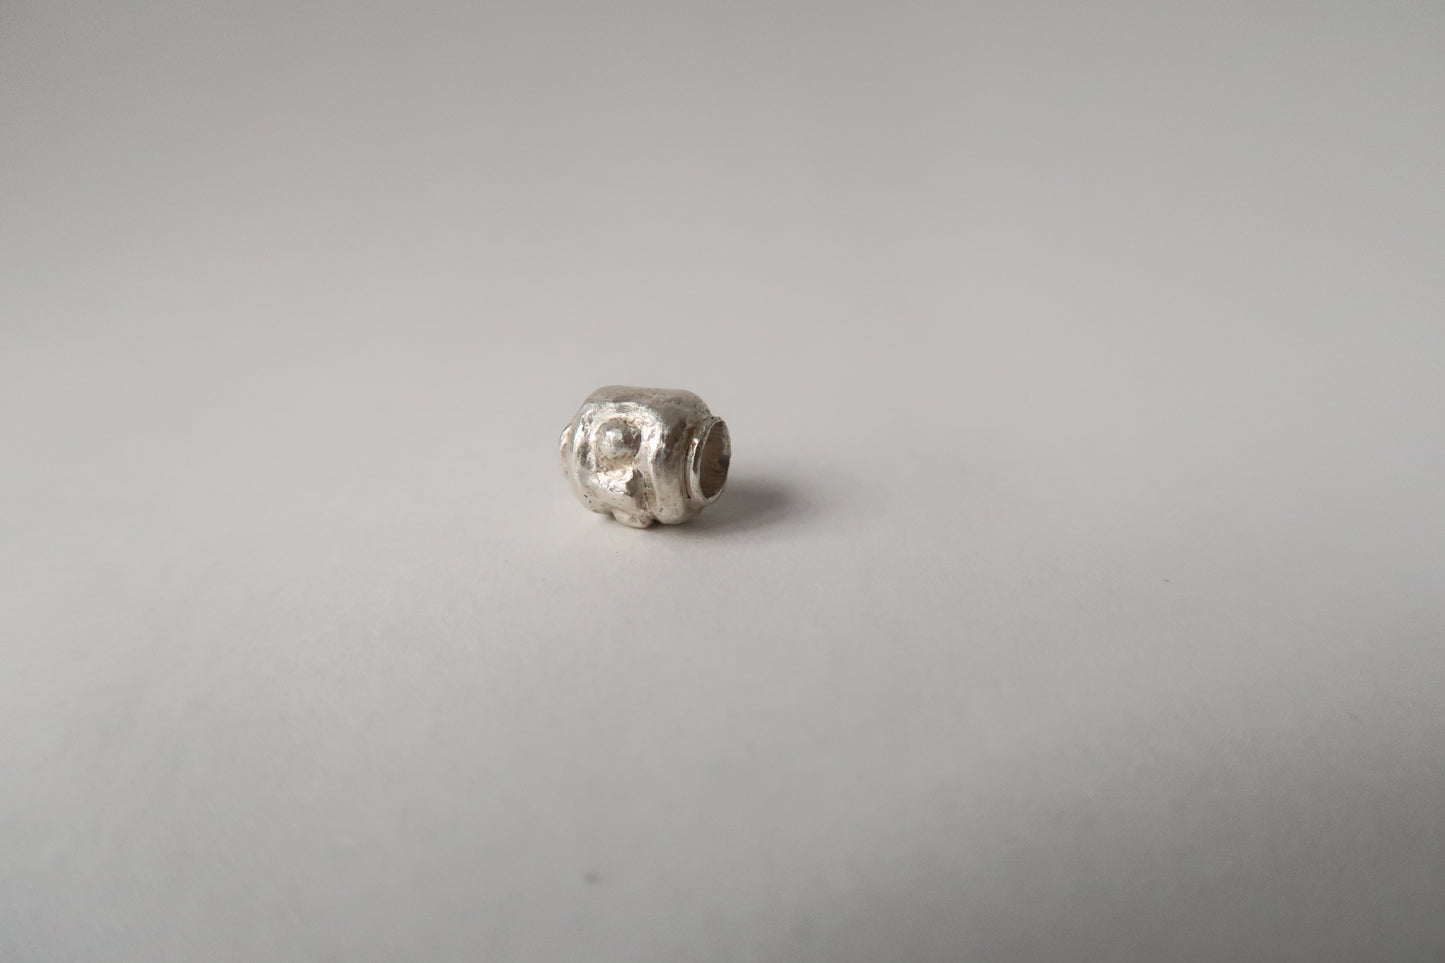 Fine Silver Lego Daruma bead charm